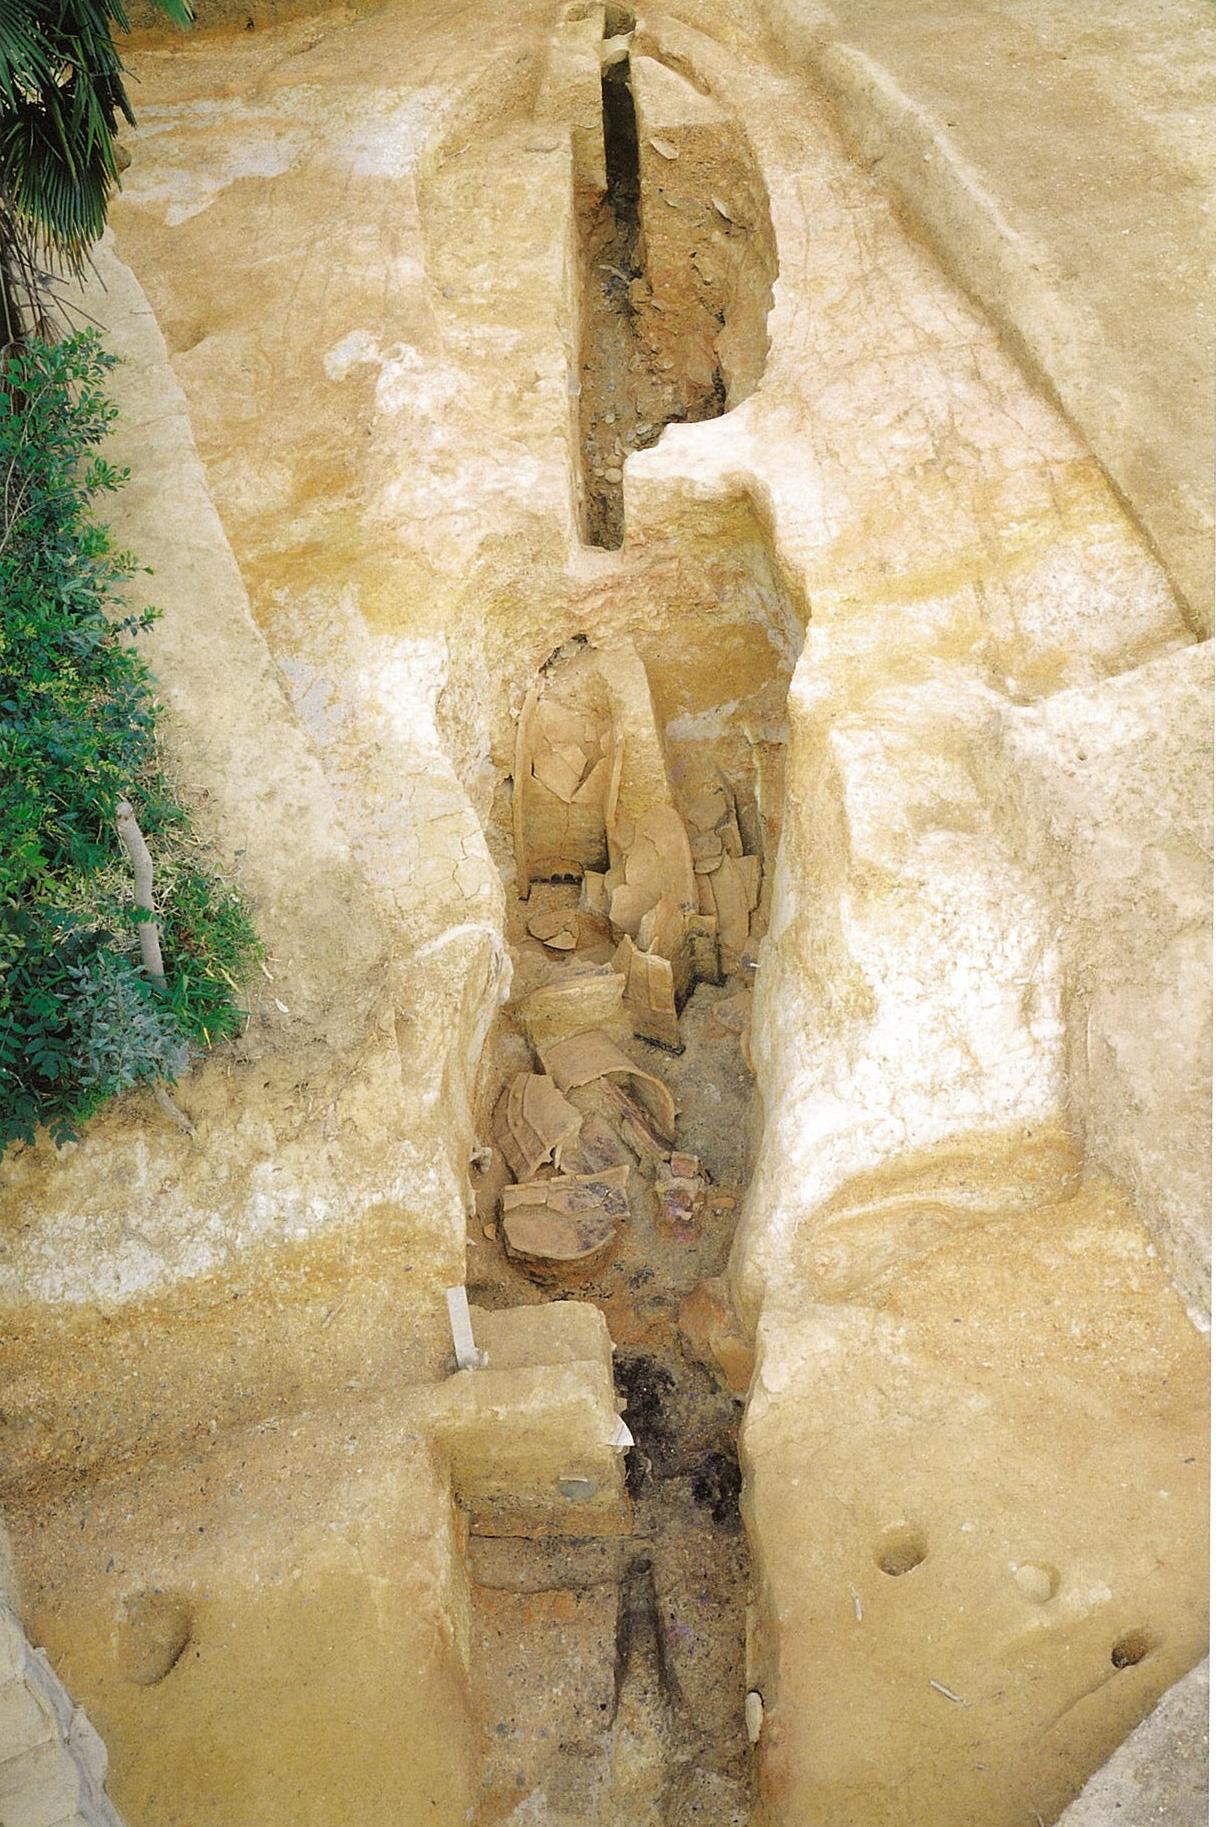 山ノ神遺跡の鴟尾出土状況の写真